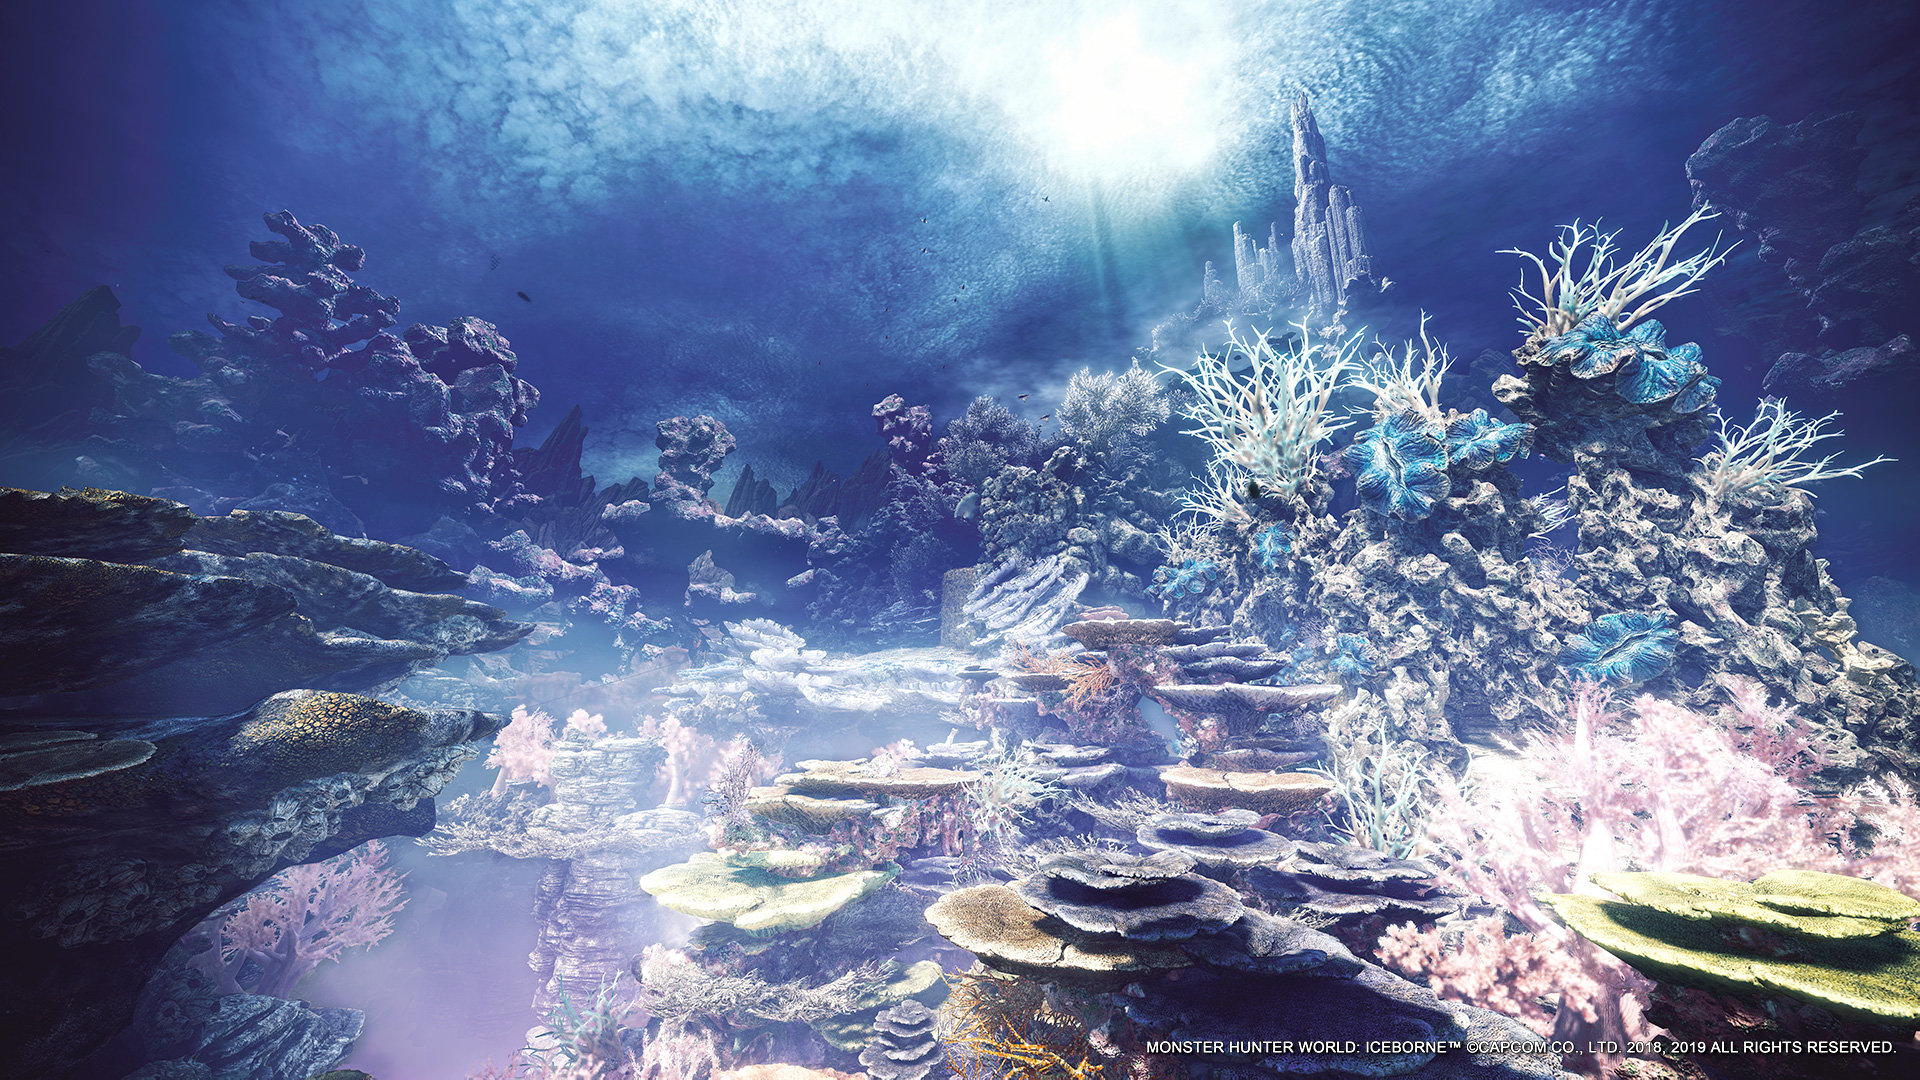 卡普空發布《魔物獵人：世界》精美壁紙 秀麗迷人